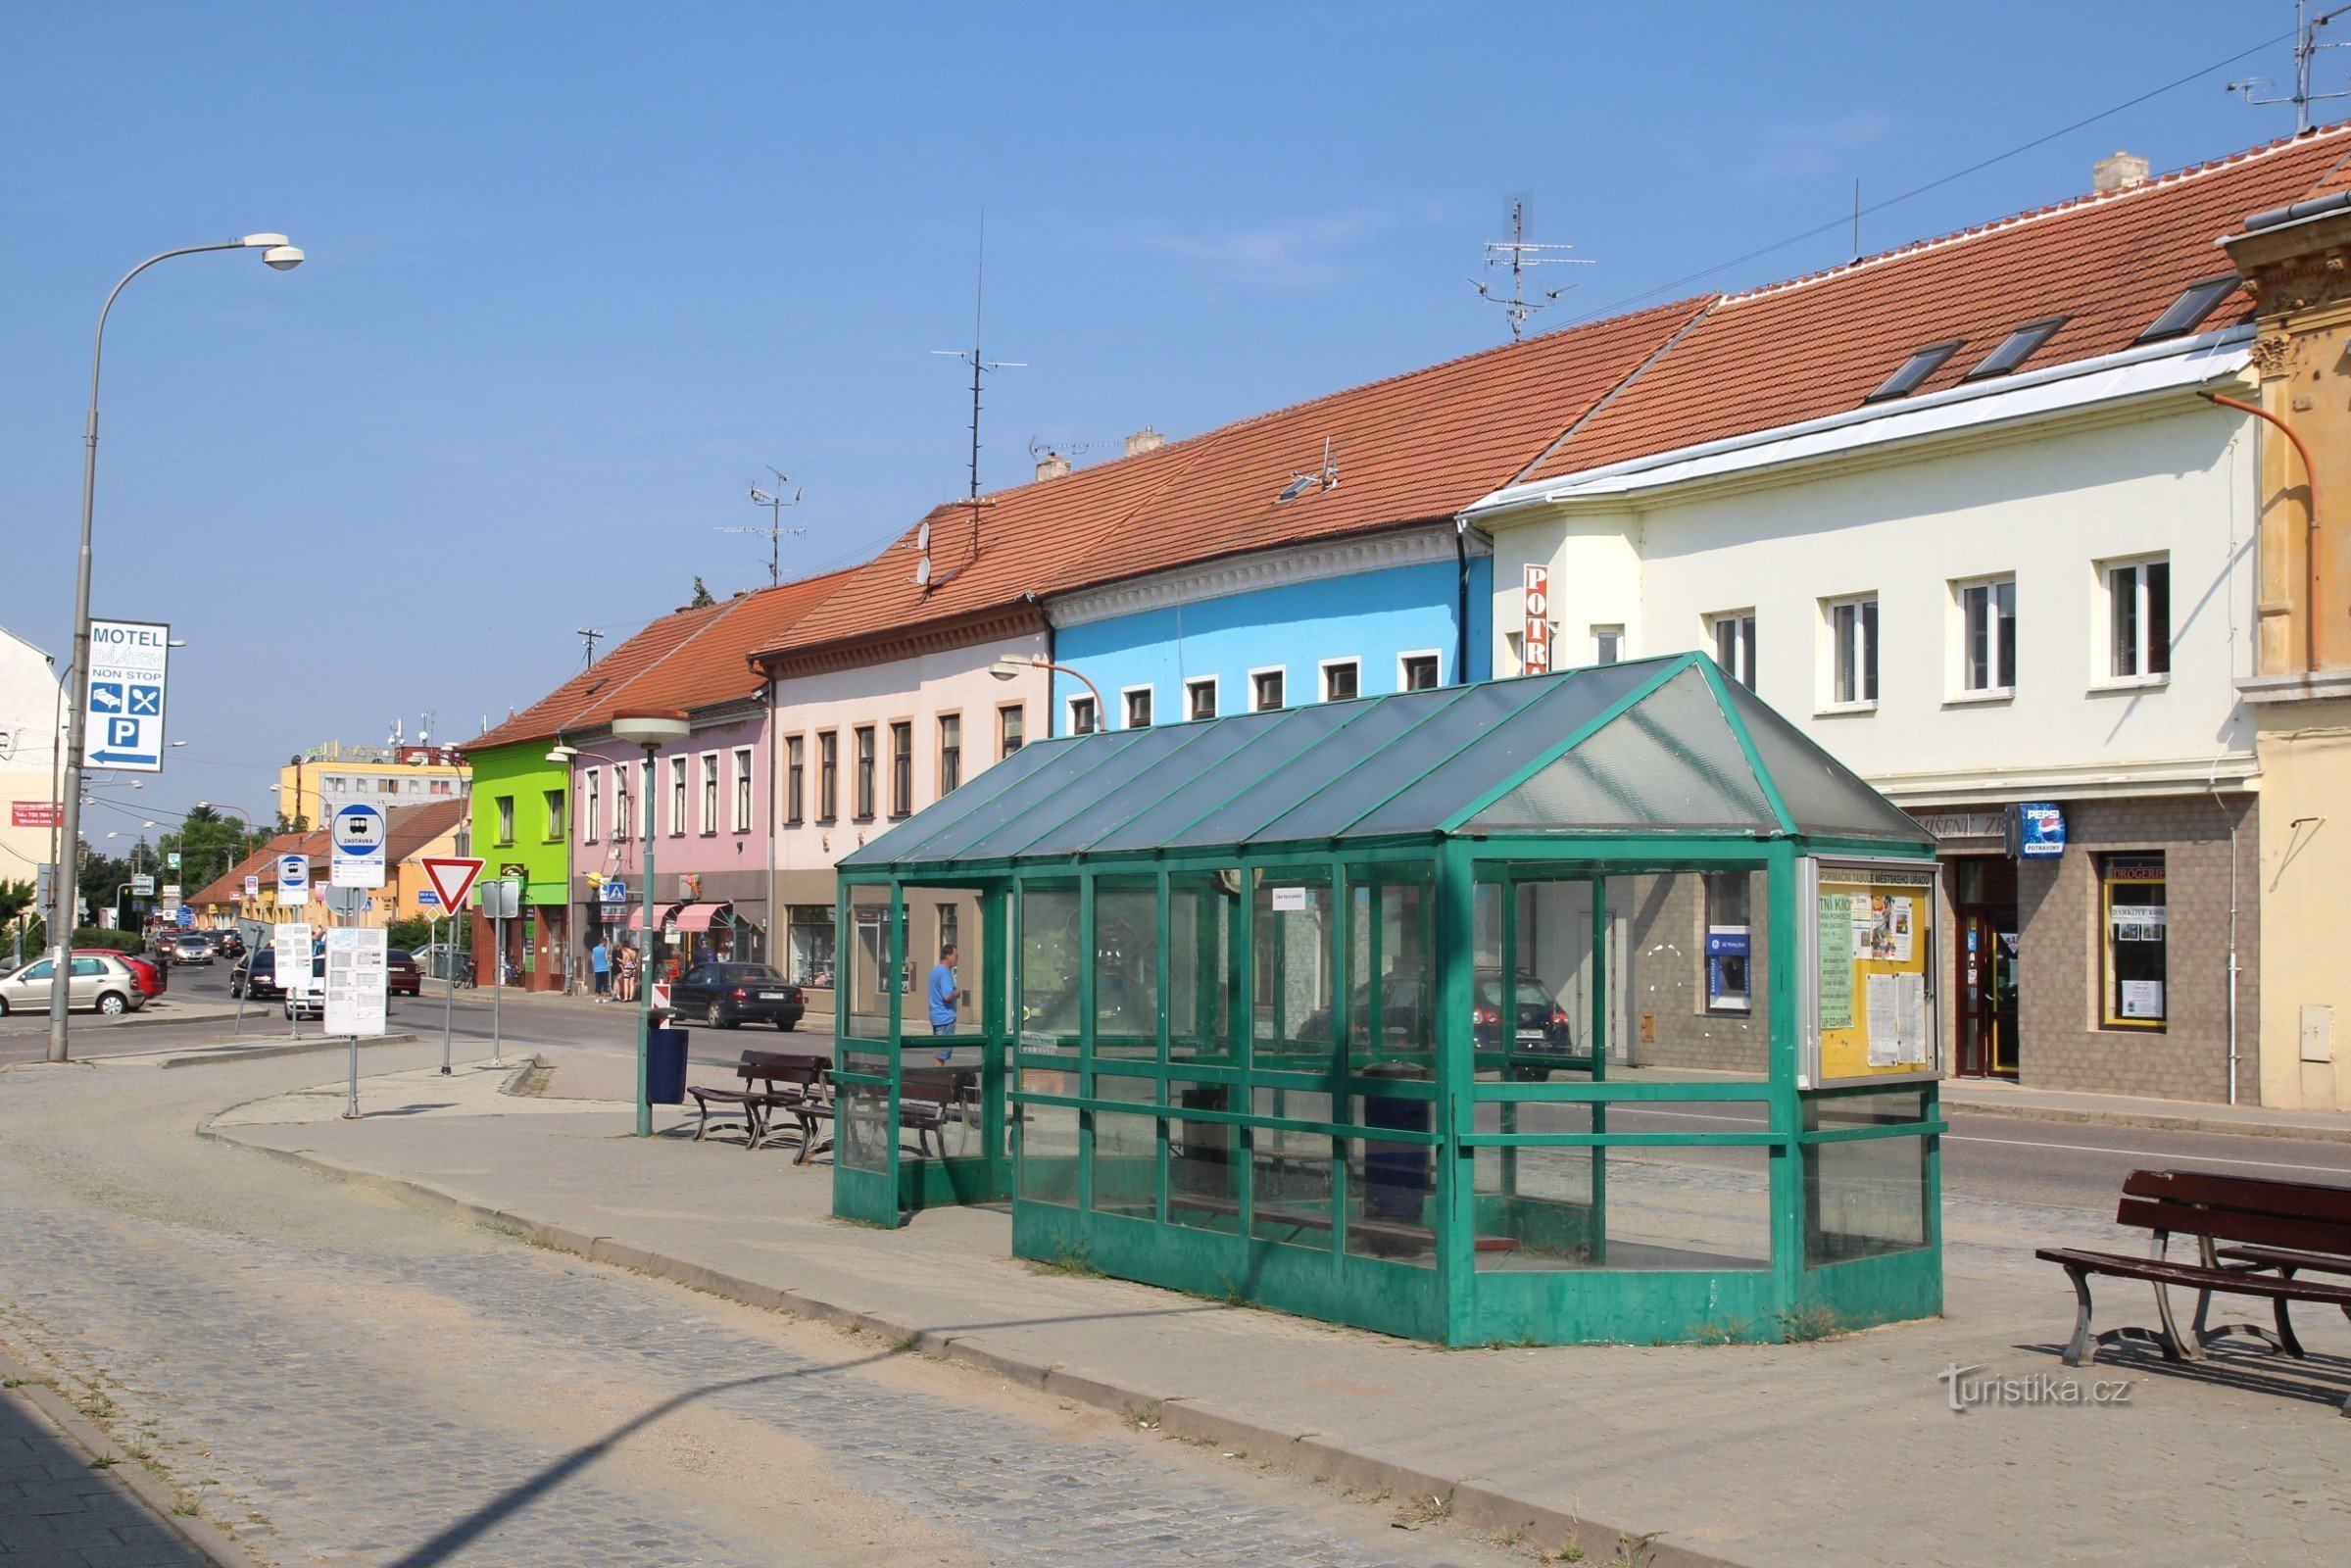 Pohořelice - bus station